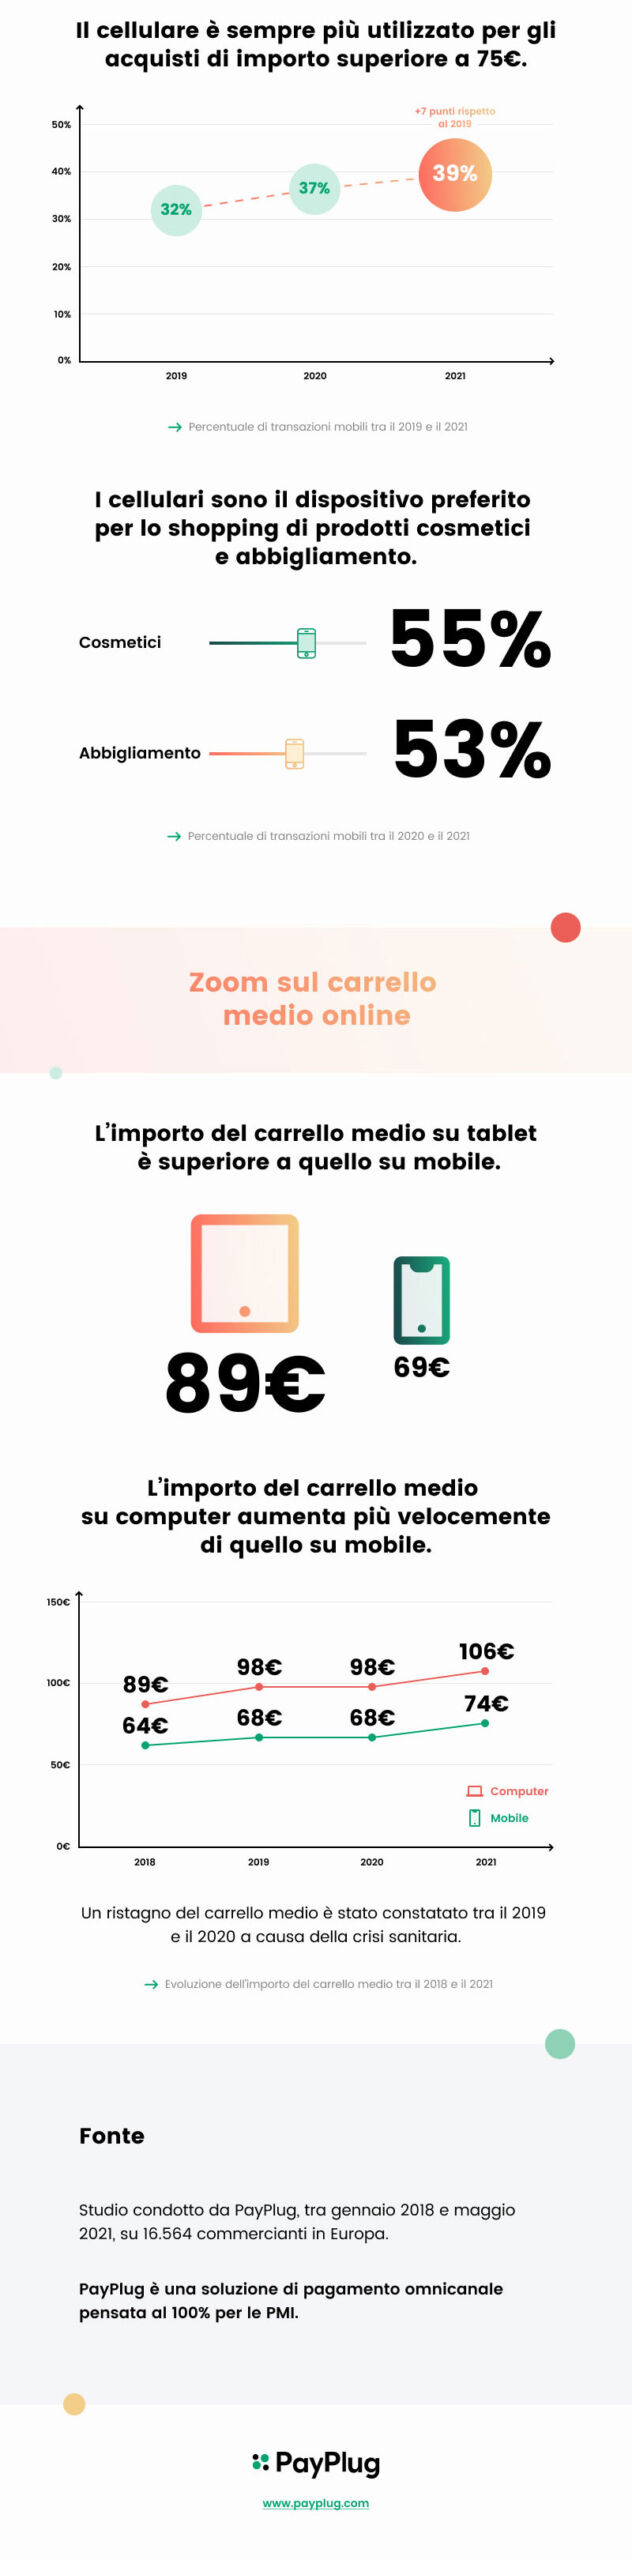 infografica mobile commerce